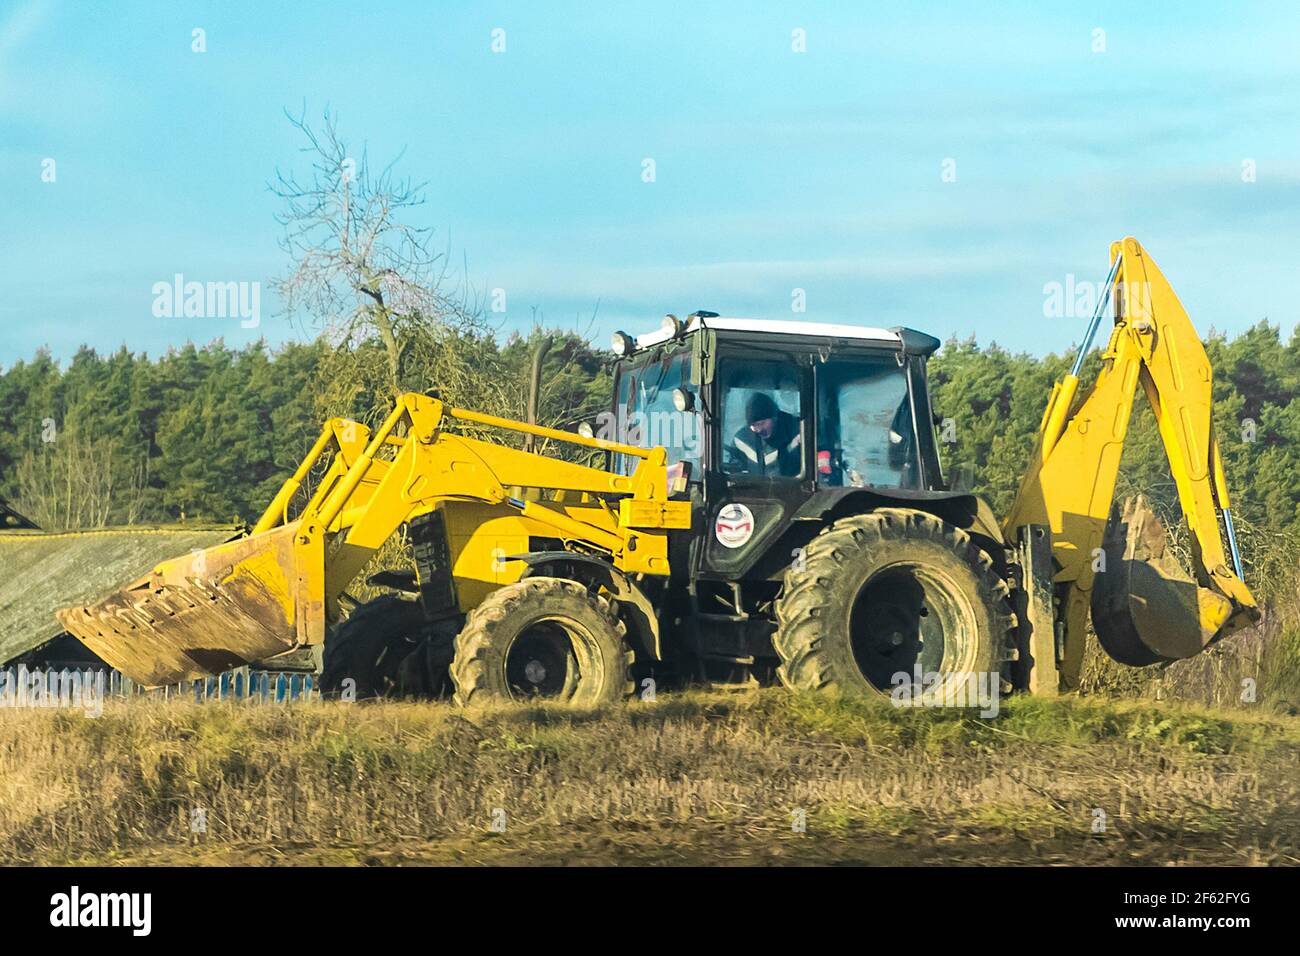 Biélorussie, région de Minsk - 19 décembre 2019 : bulldozer dans un champ de campagne sur fond de forêt ensoleillée. Banque D'Images